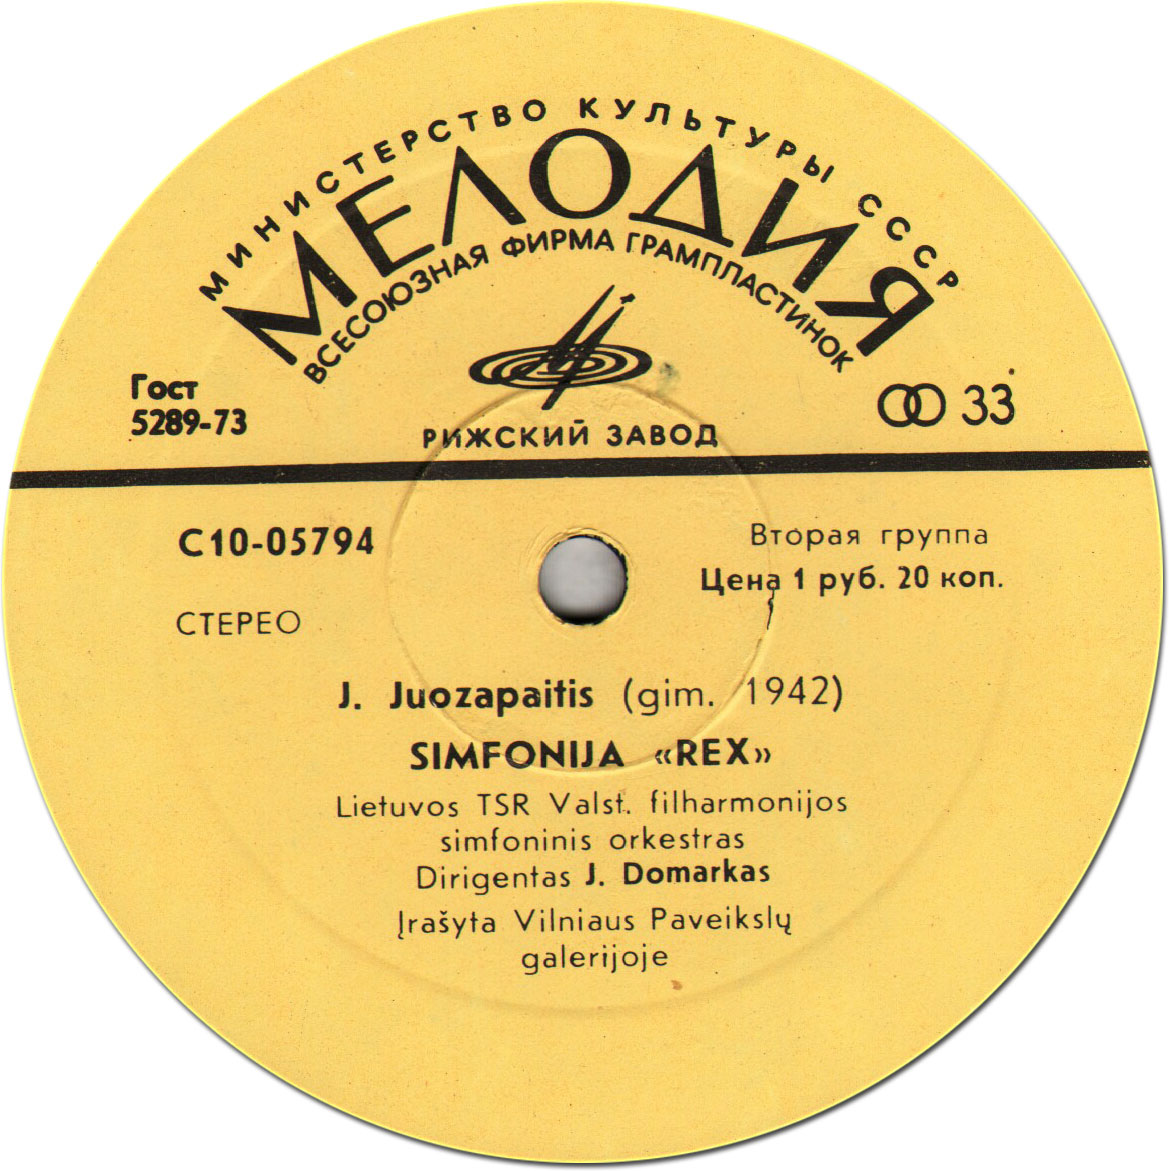 БАРКАУСКАС Витаутас (1931) Симфония № 2 / Ю. ЮОЗАПАЙТИС: Симфония"Rex"